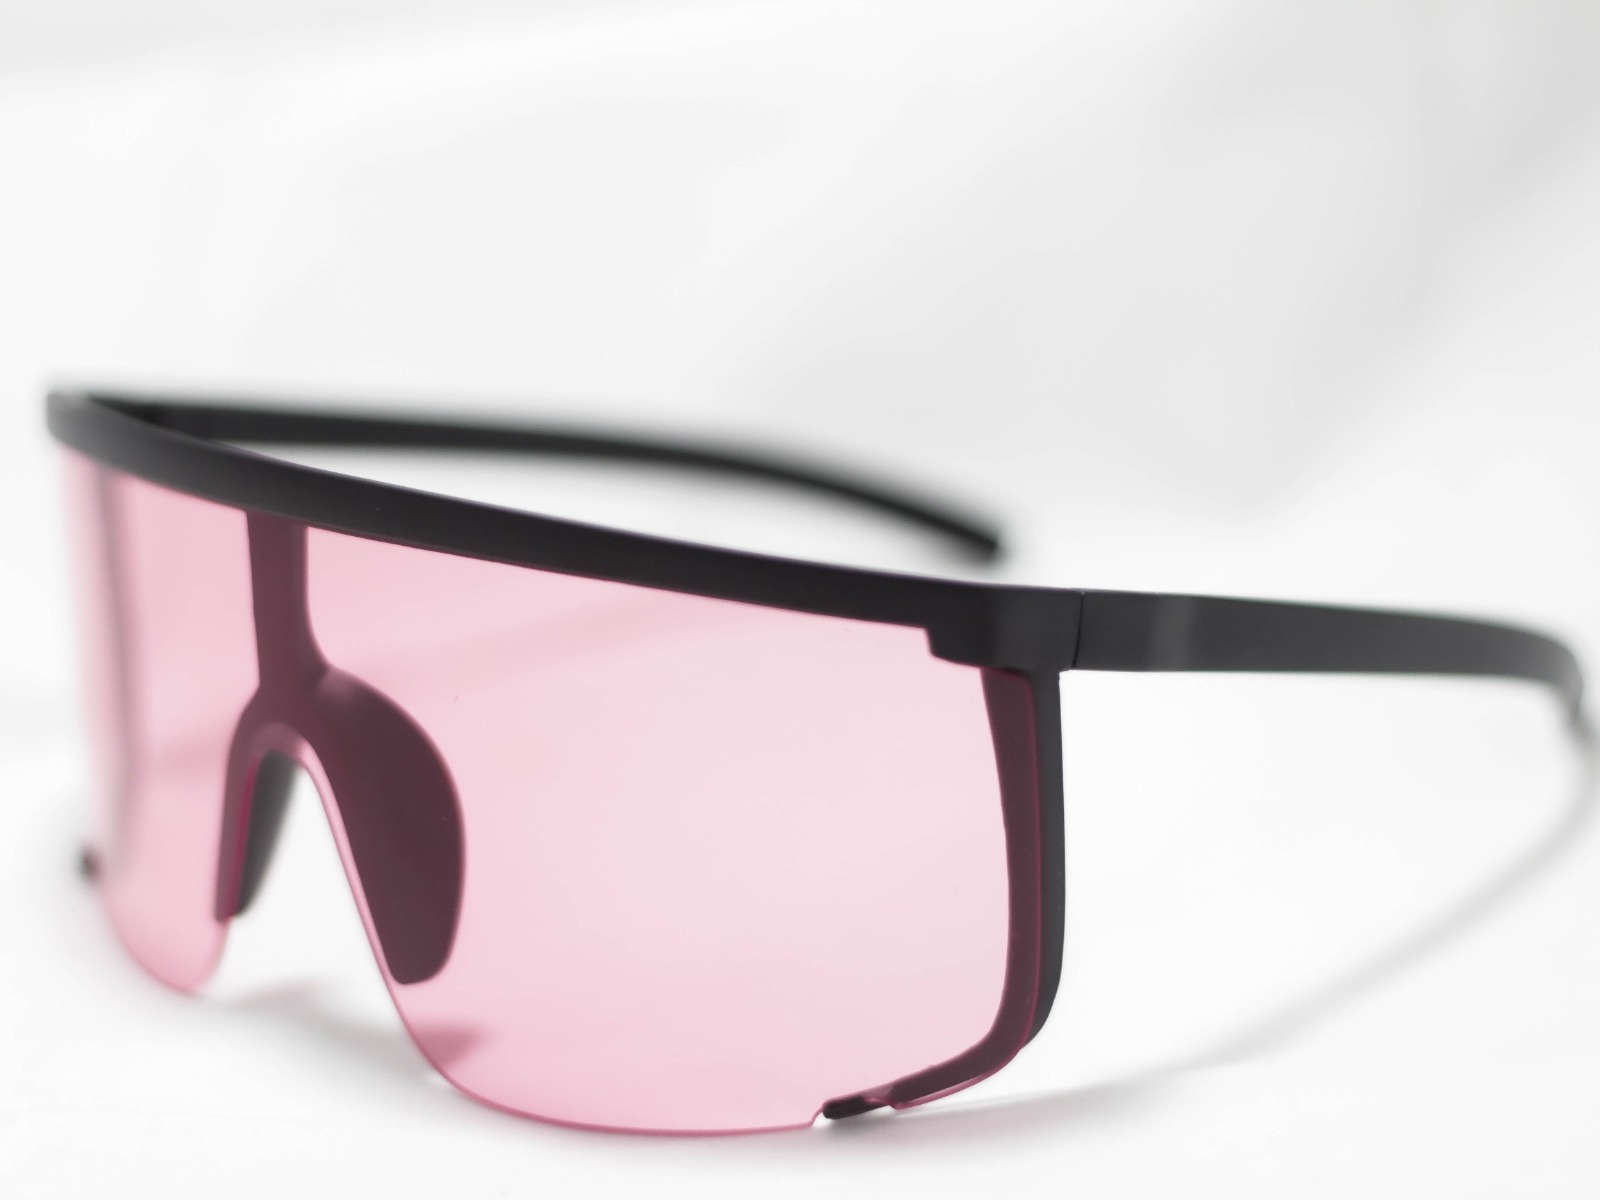 Uvex veiligheidsbril beschermt jou ogen als de beste